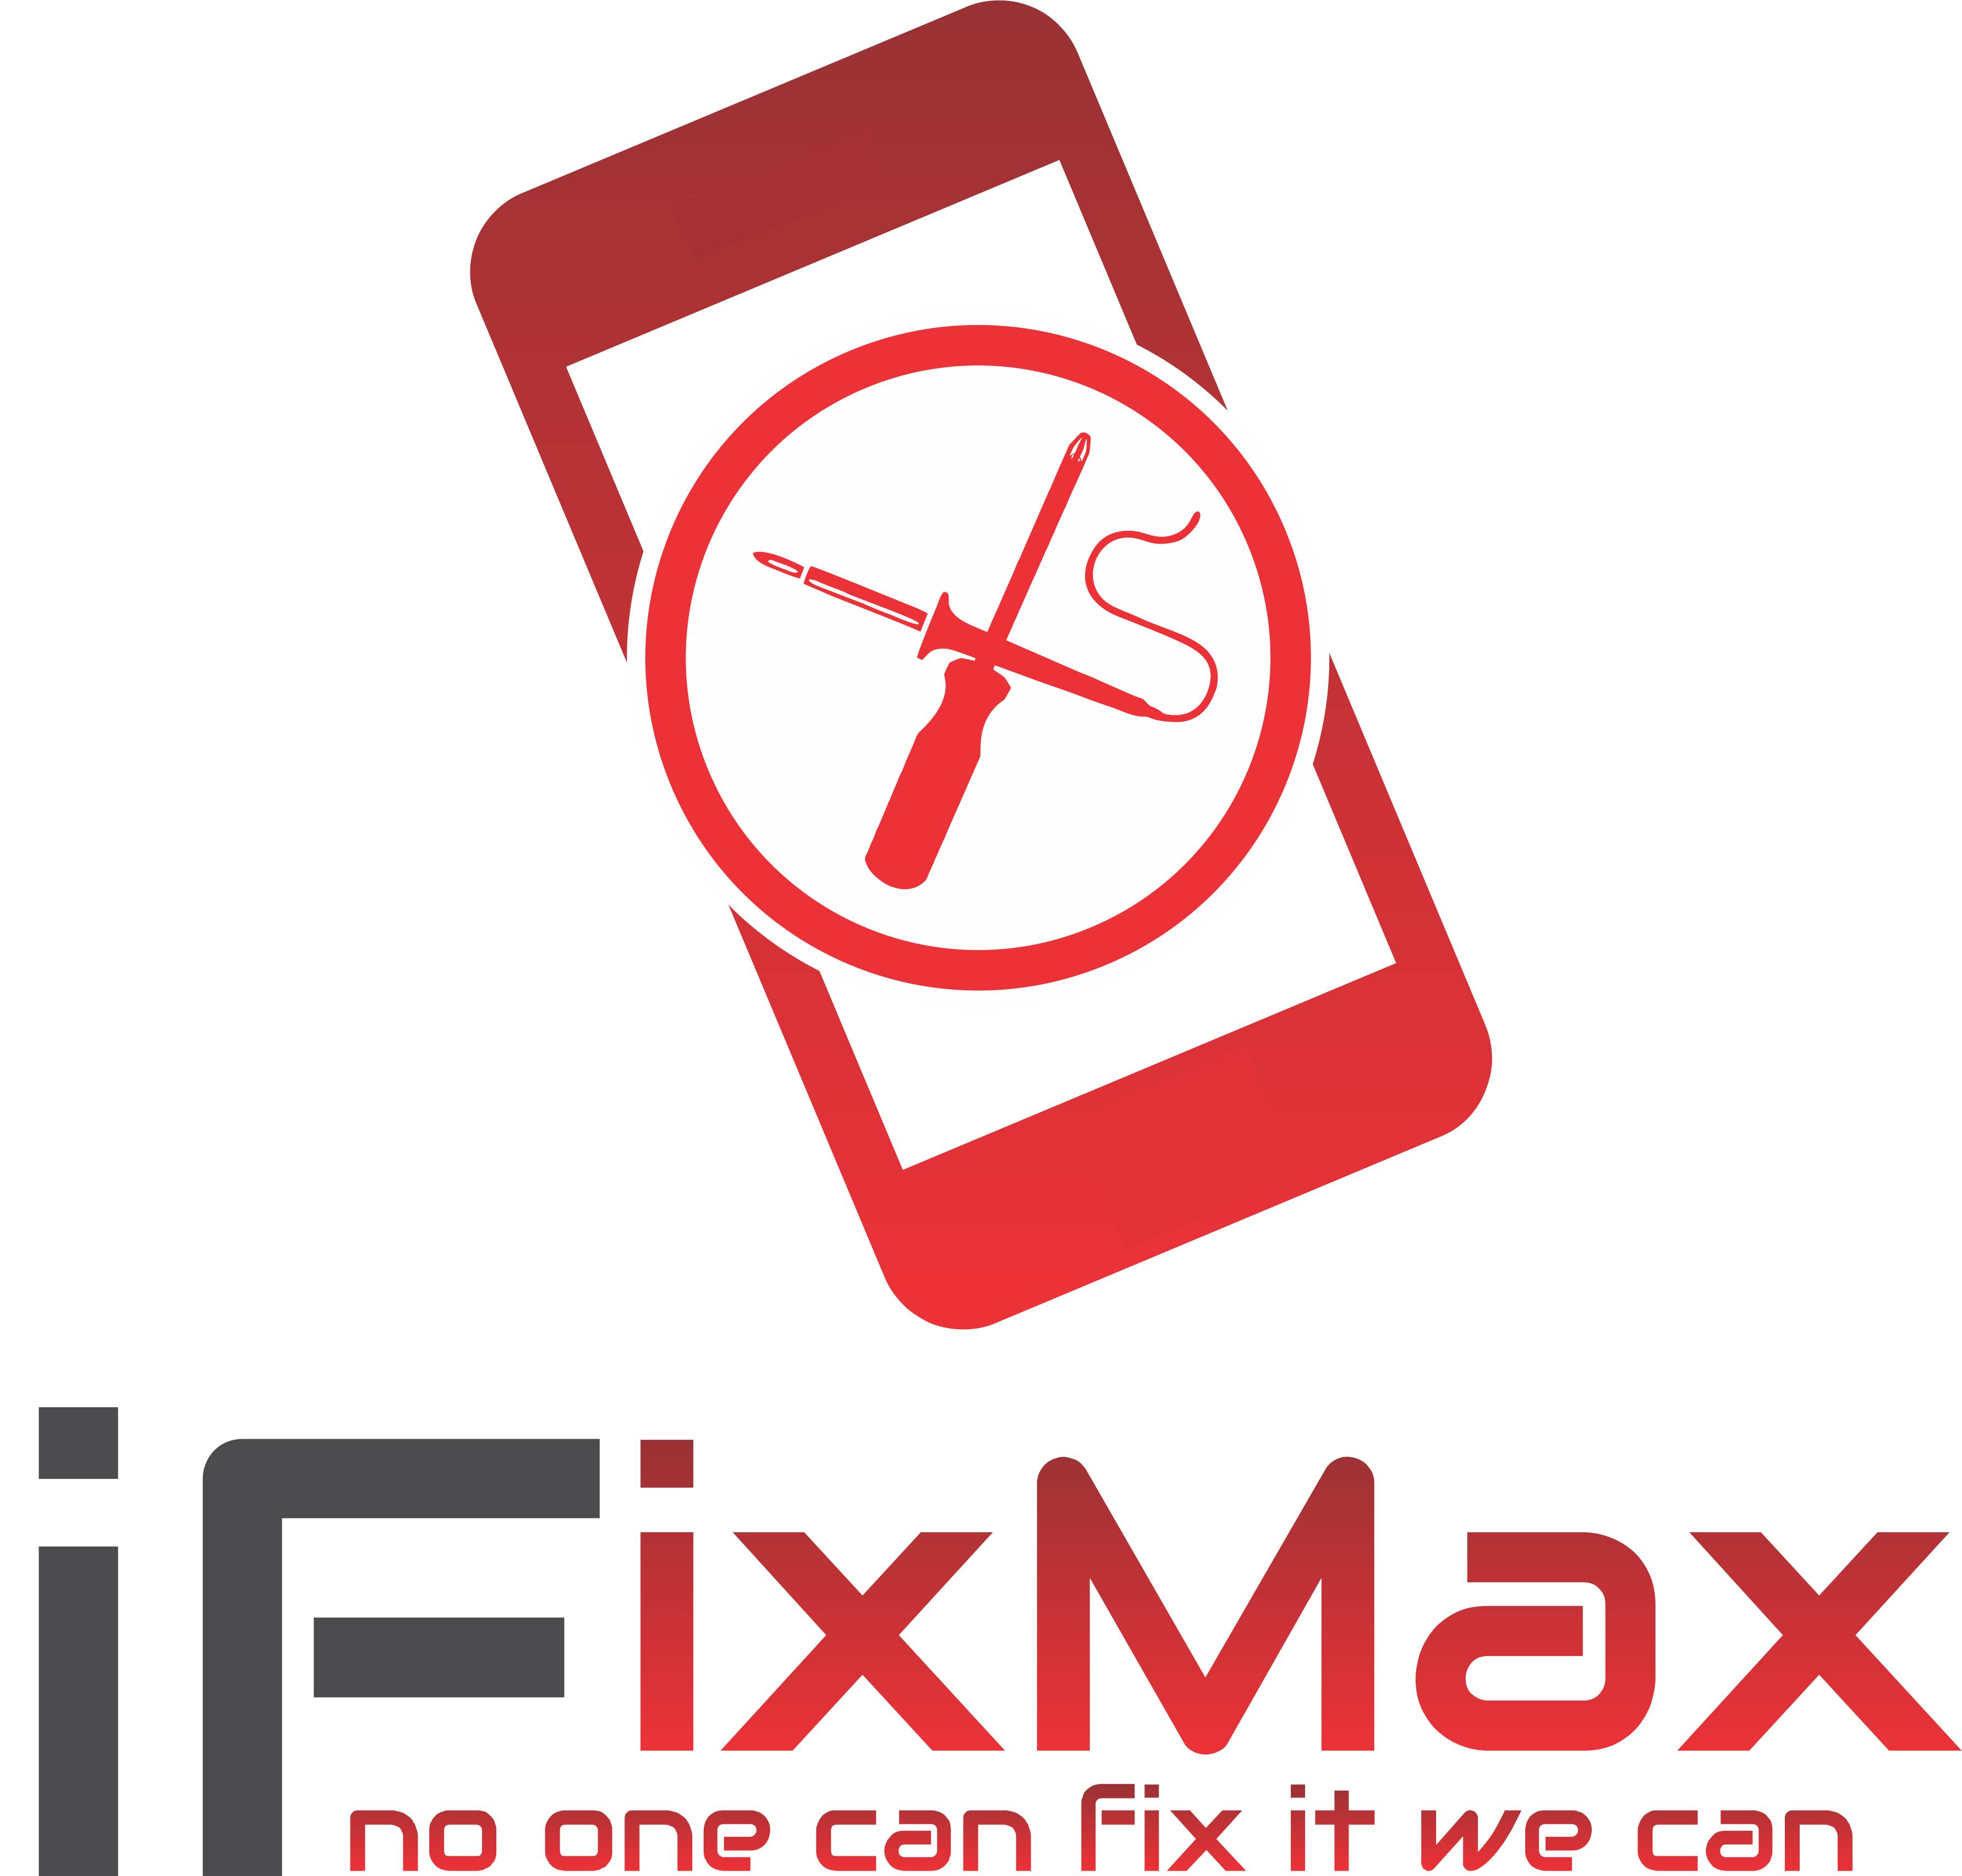 iFixMax - Cell Phone, Tablet & Computer Repair 
iPhone Repair, iPad Repair